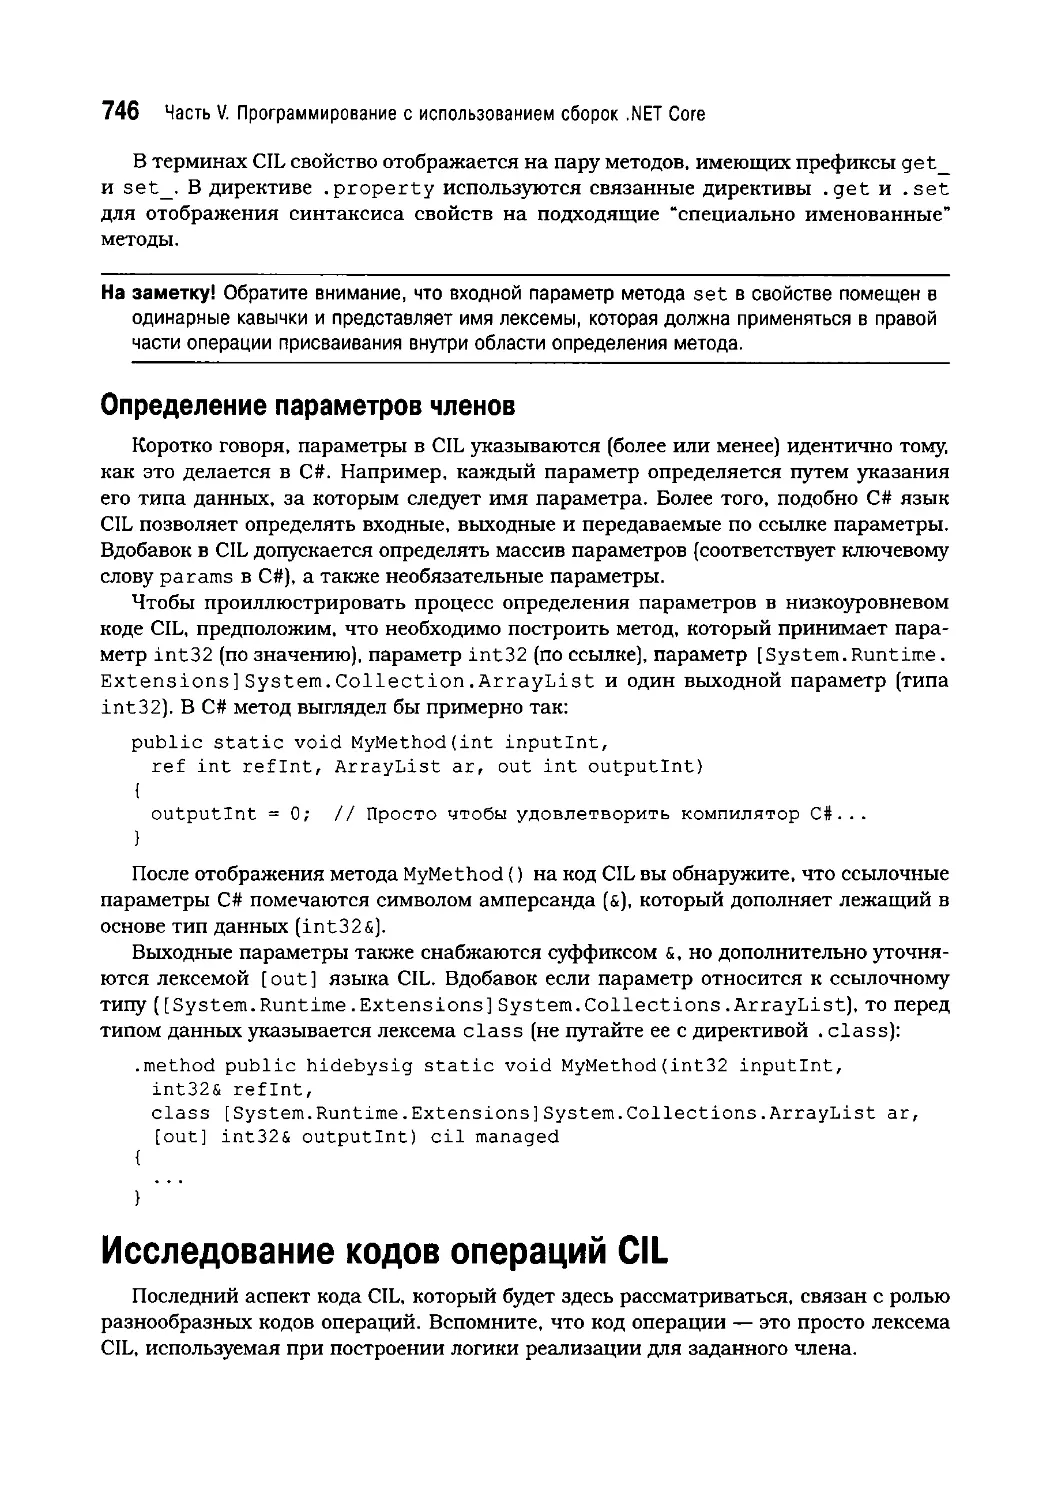 Определение параметров членов
Исследование кодов операций CIL